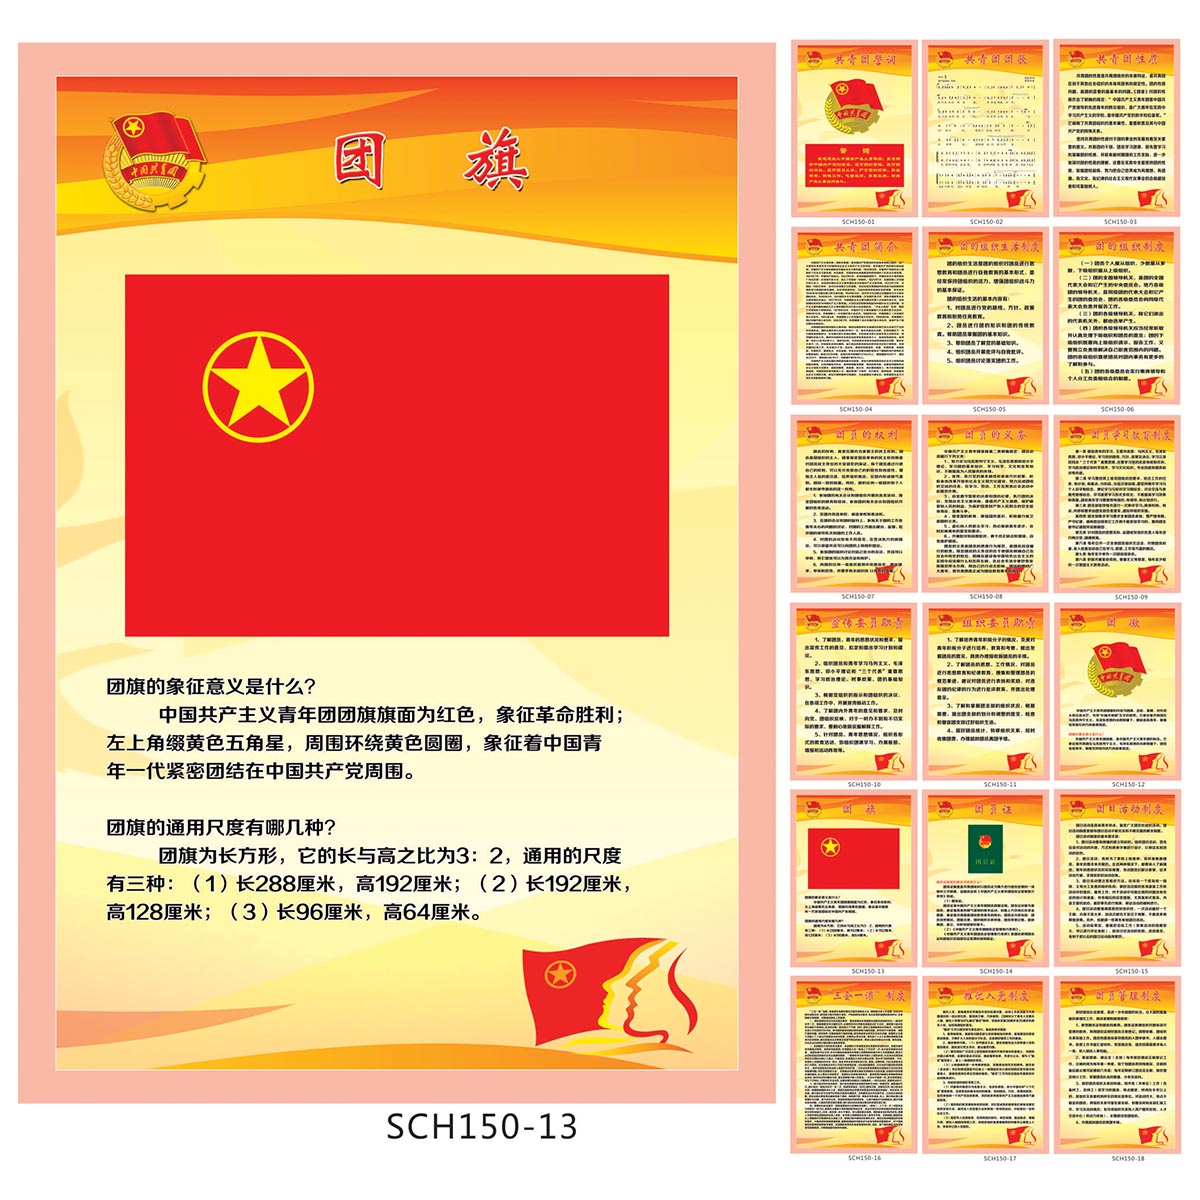 共青团制度牌 团委宣传画 团支部挂图 团旗象征意义贴画SCH150-13